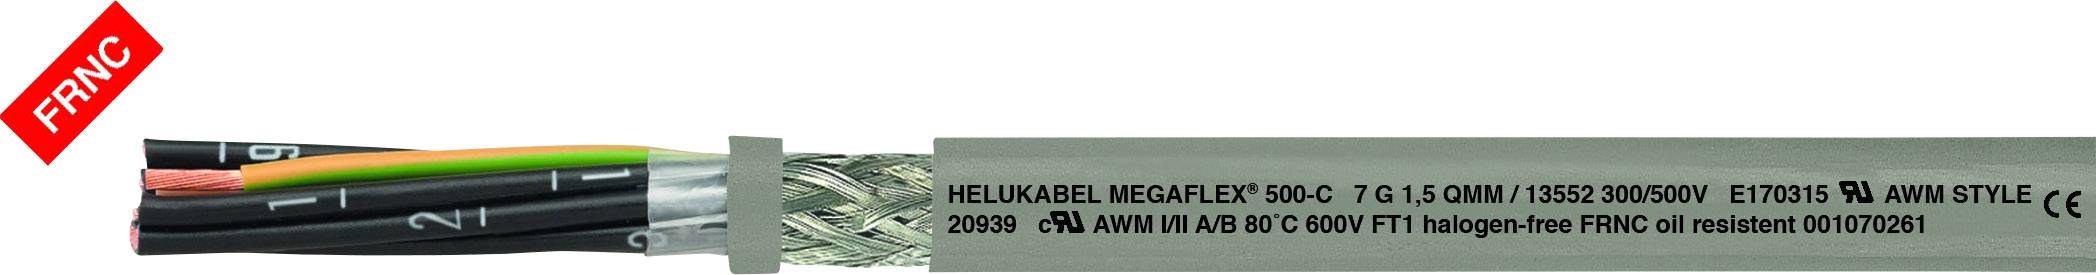 HELUKABEL MEGAFLEX® 500-C Steuerleitung 4 x 0.75 mm² Grau 13520 Meterware